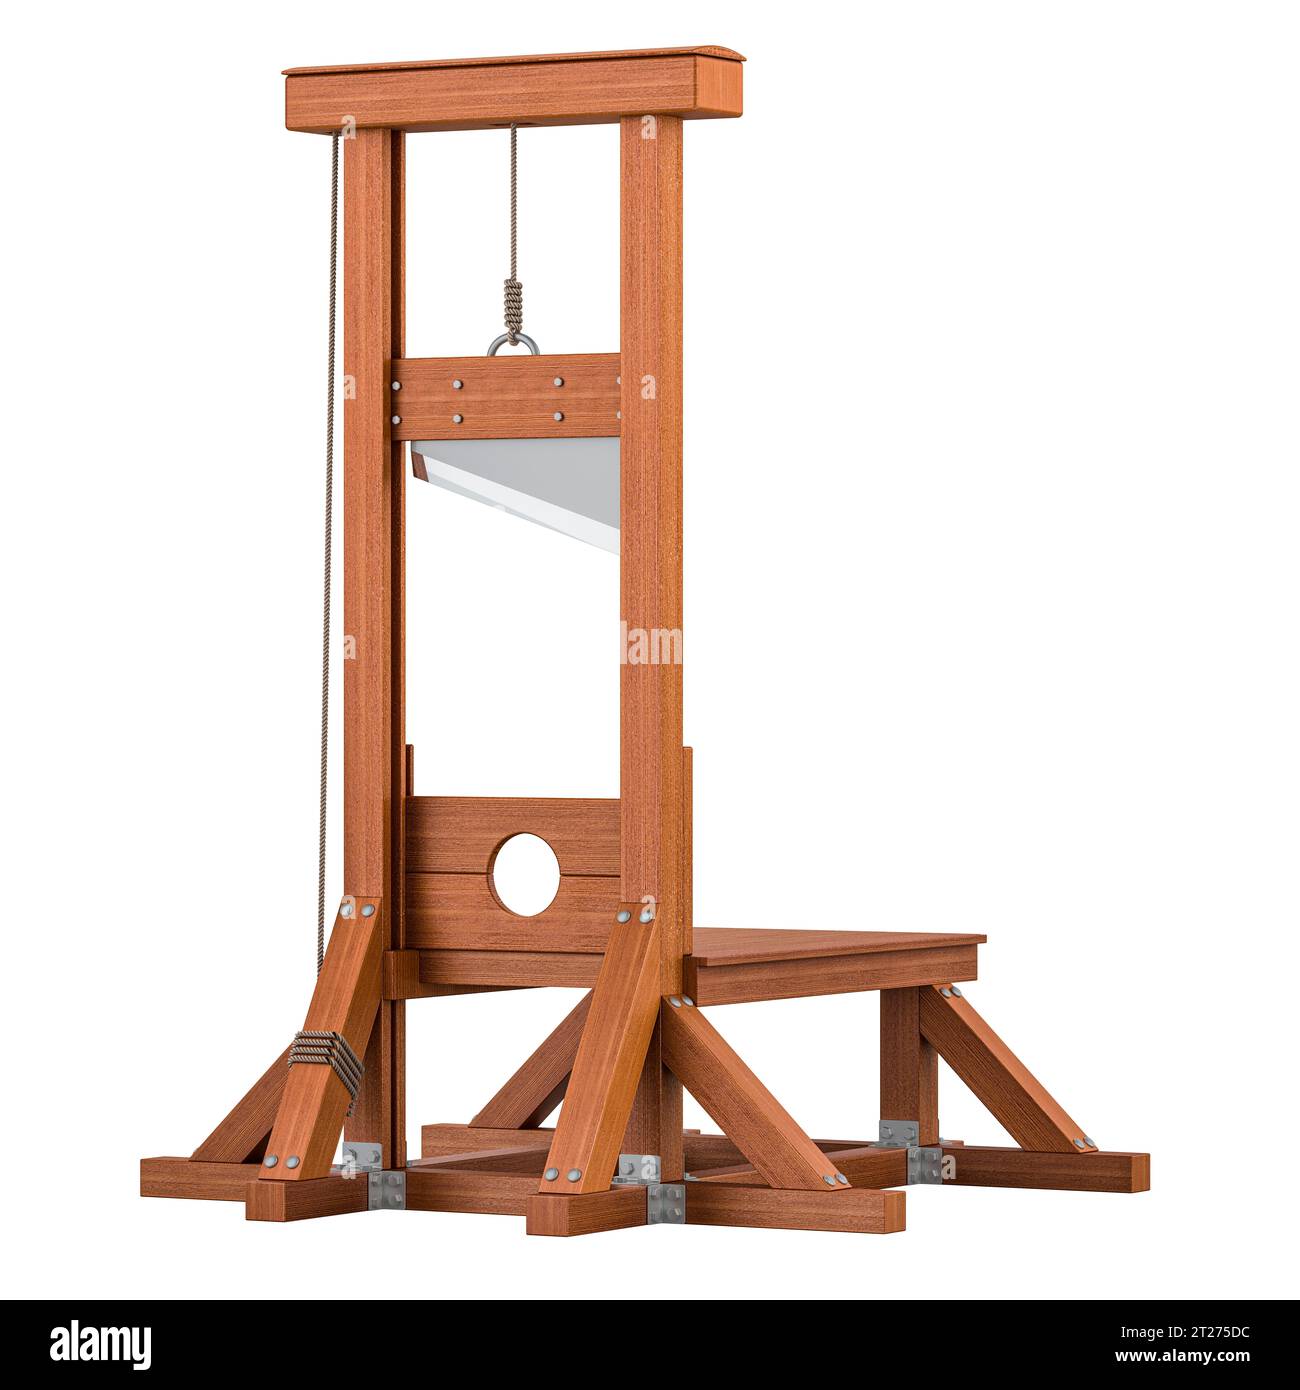 Guillotine, guillotine en bois. Rendu 3D isolé sur fond blanc Banque D'Images